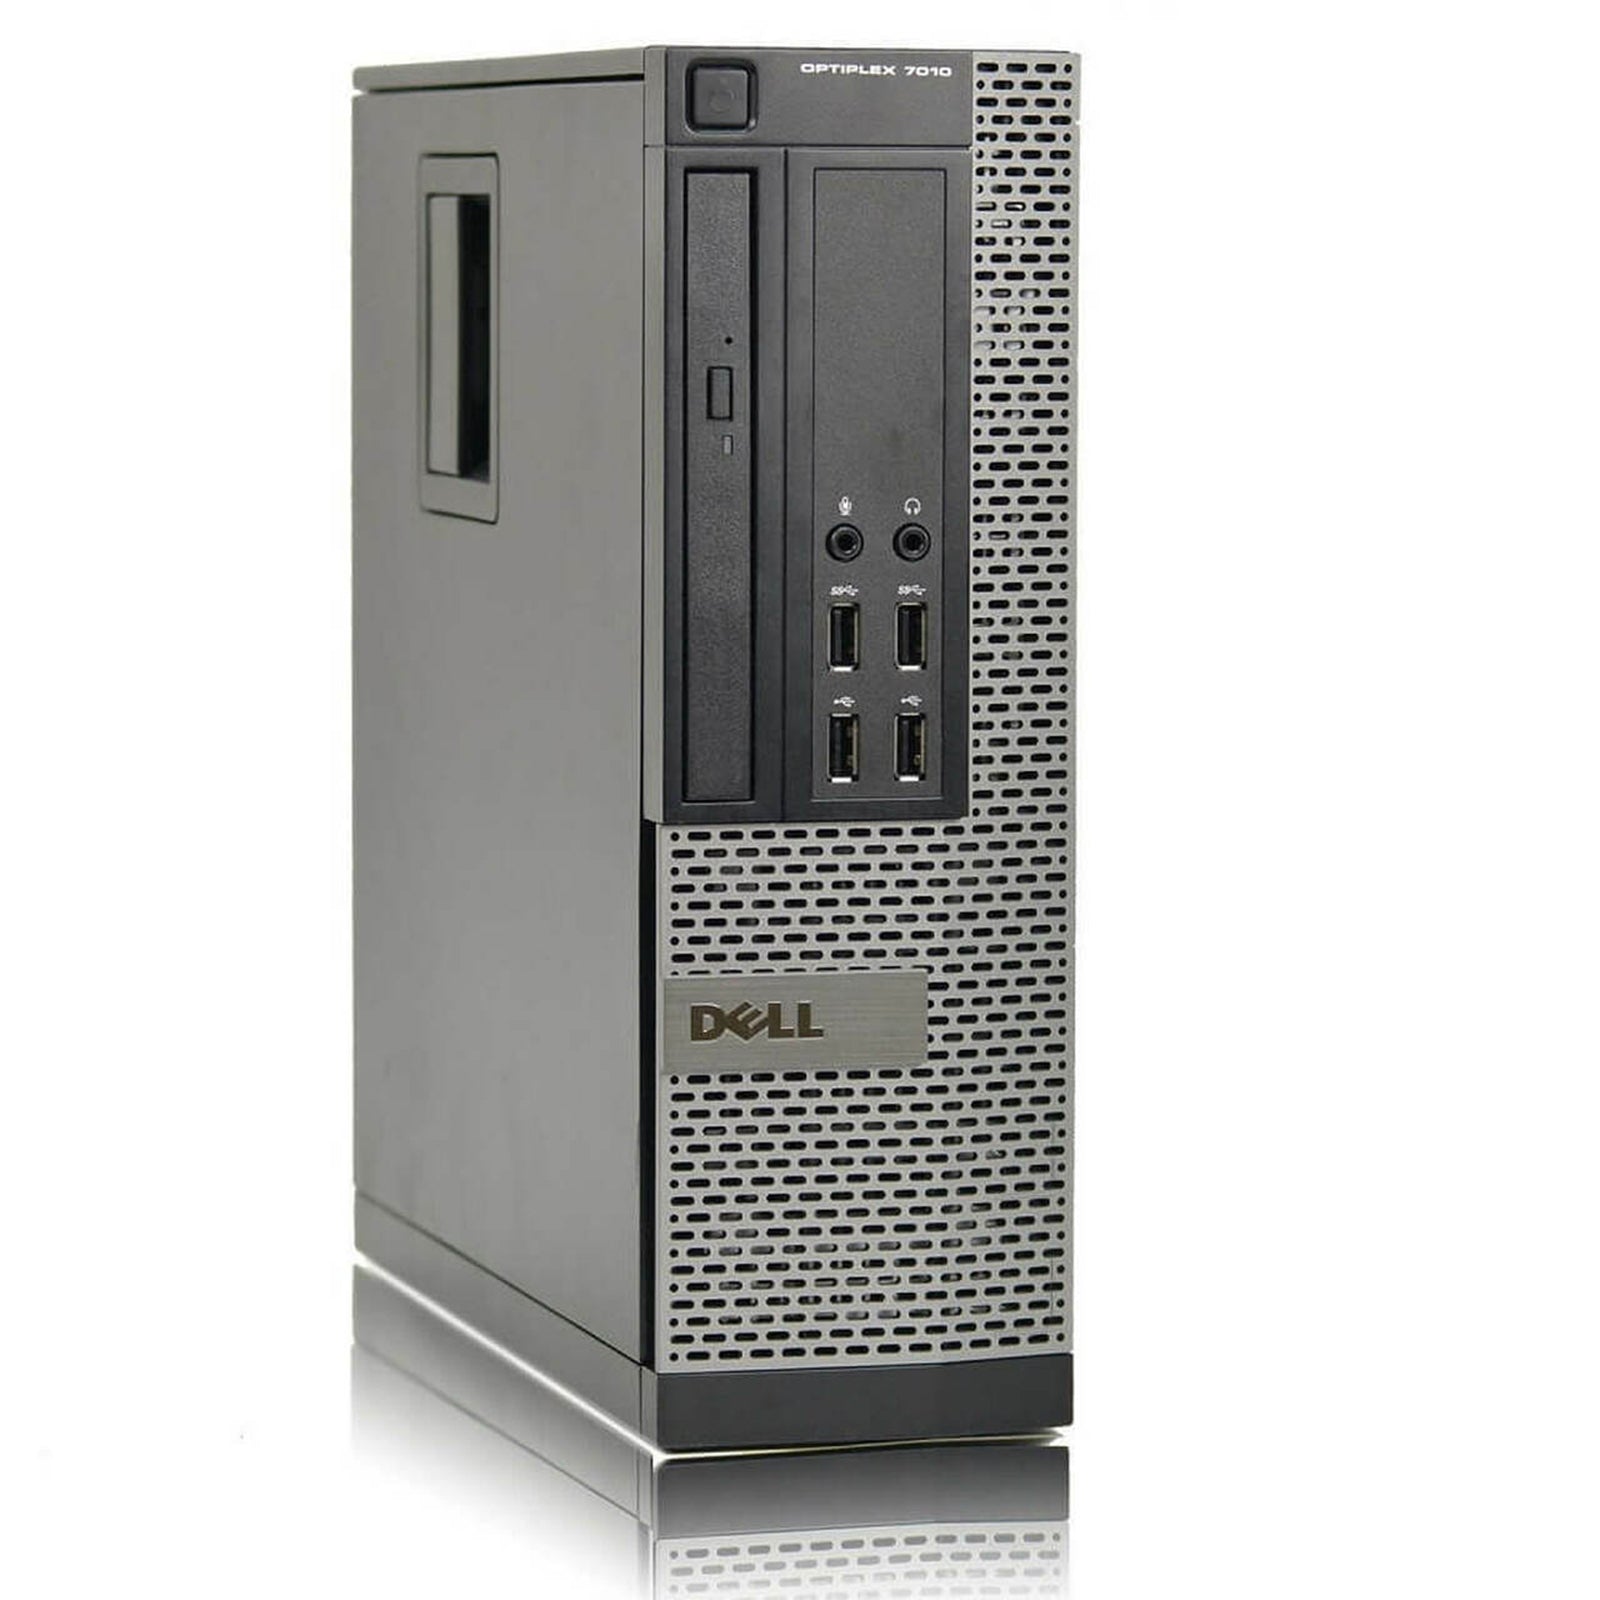 PC Desktop Ricondizionato - Grado A - Dell Optiplex 7010 SFF PC Computer Intel i5-3470 Ram 16GB SSD 240GB DVD-ROM (Ricondizionato Grado A) - Disponibile in 2-4 giorni lavorativi